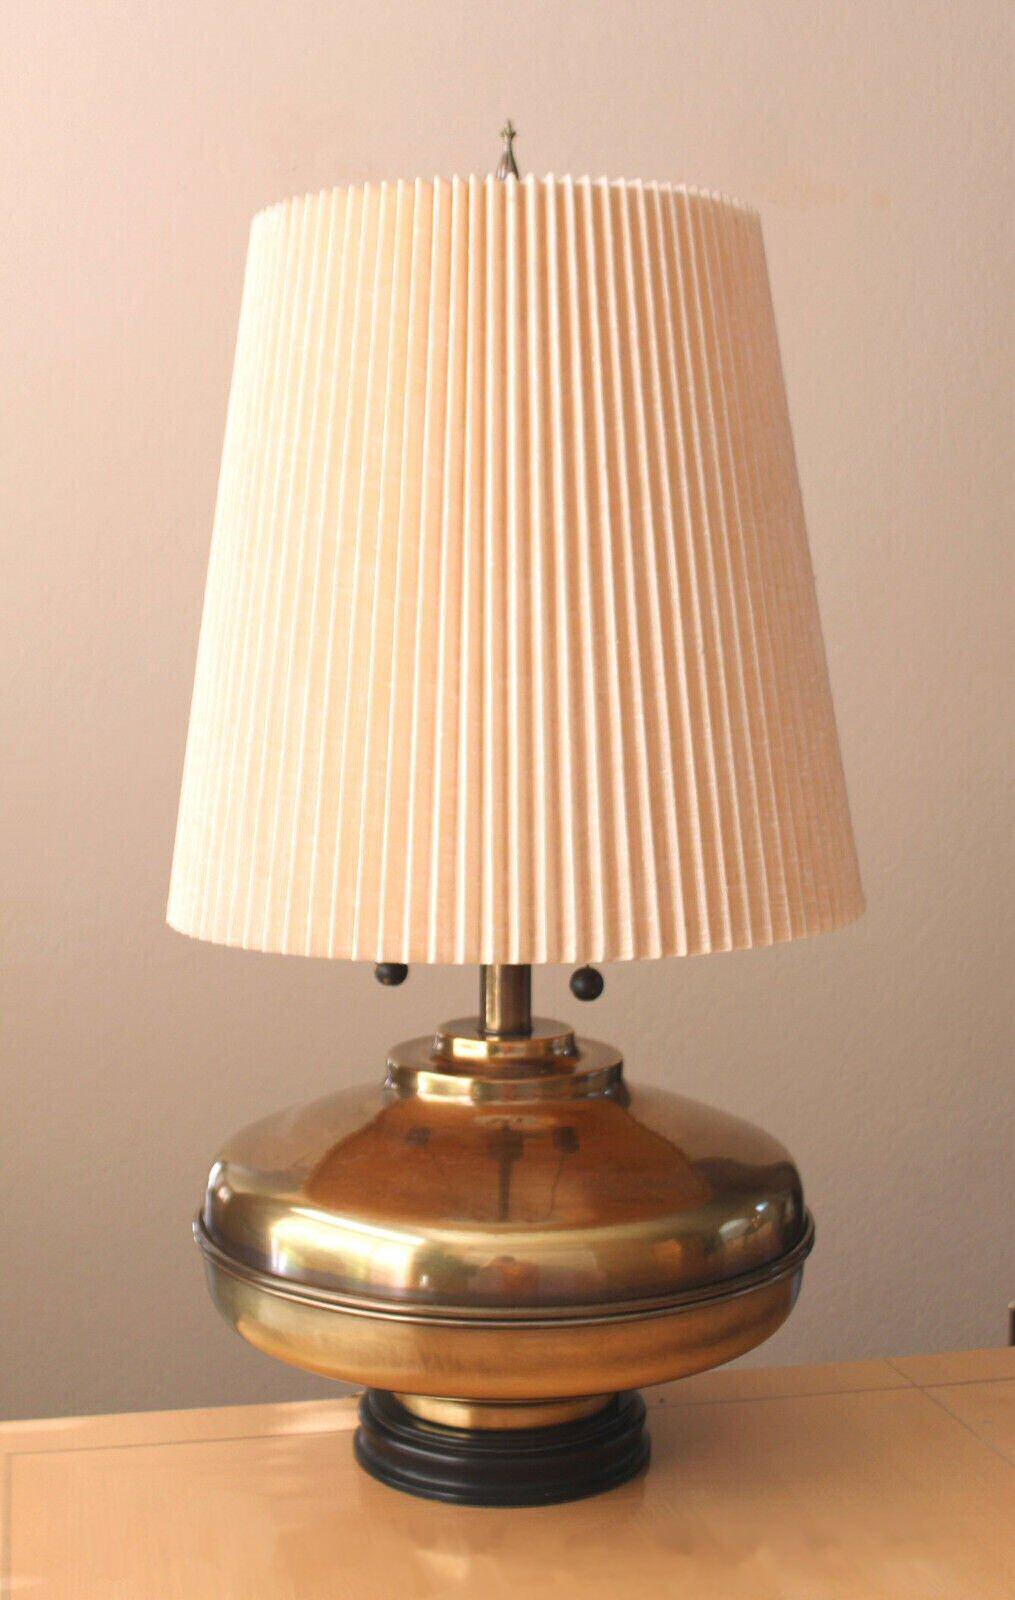 marbro lamp company history